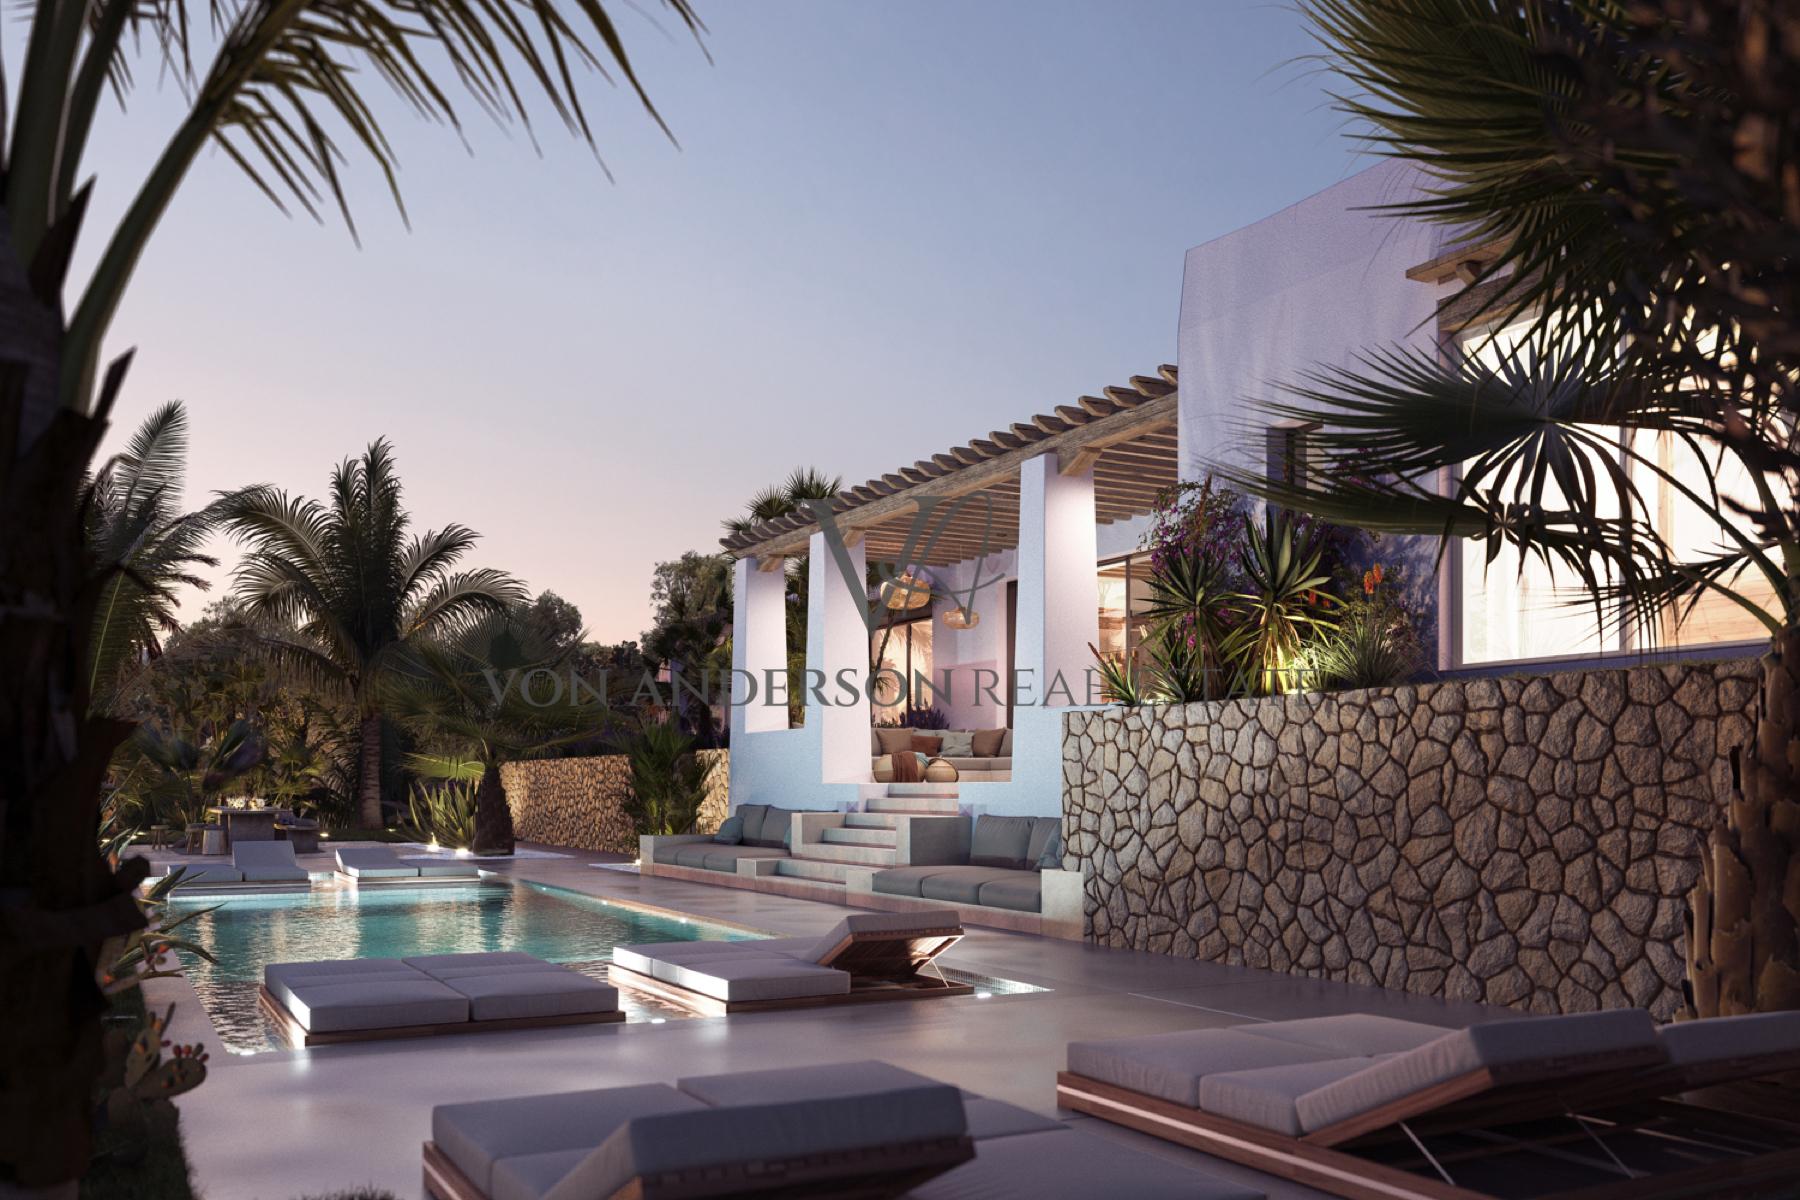 Magnificent Hillside Villa Designed by Renowned Ibiza Architect Blakstad, ref. VA1037, for sale in Ibiza by Von Anderson Real Estate